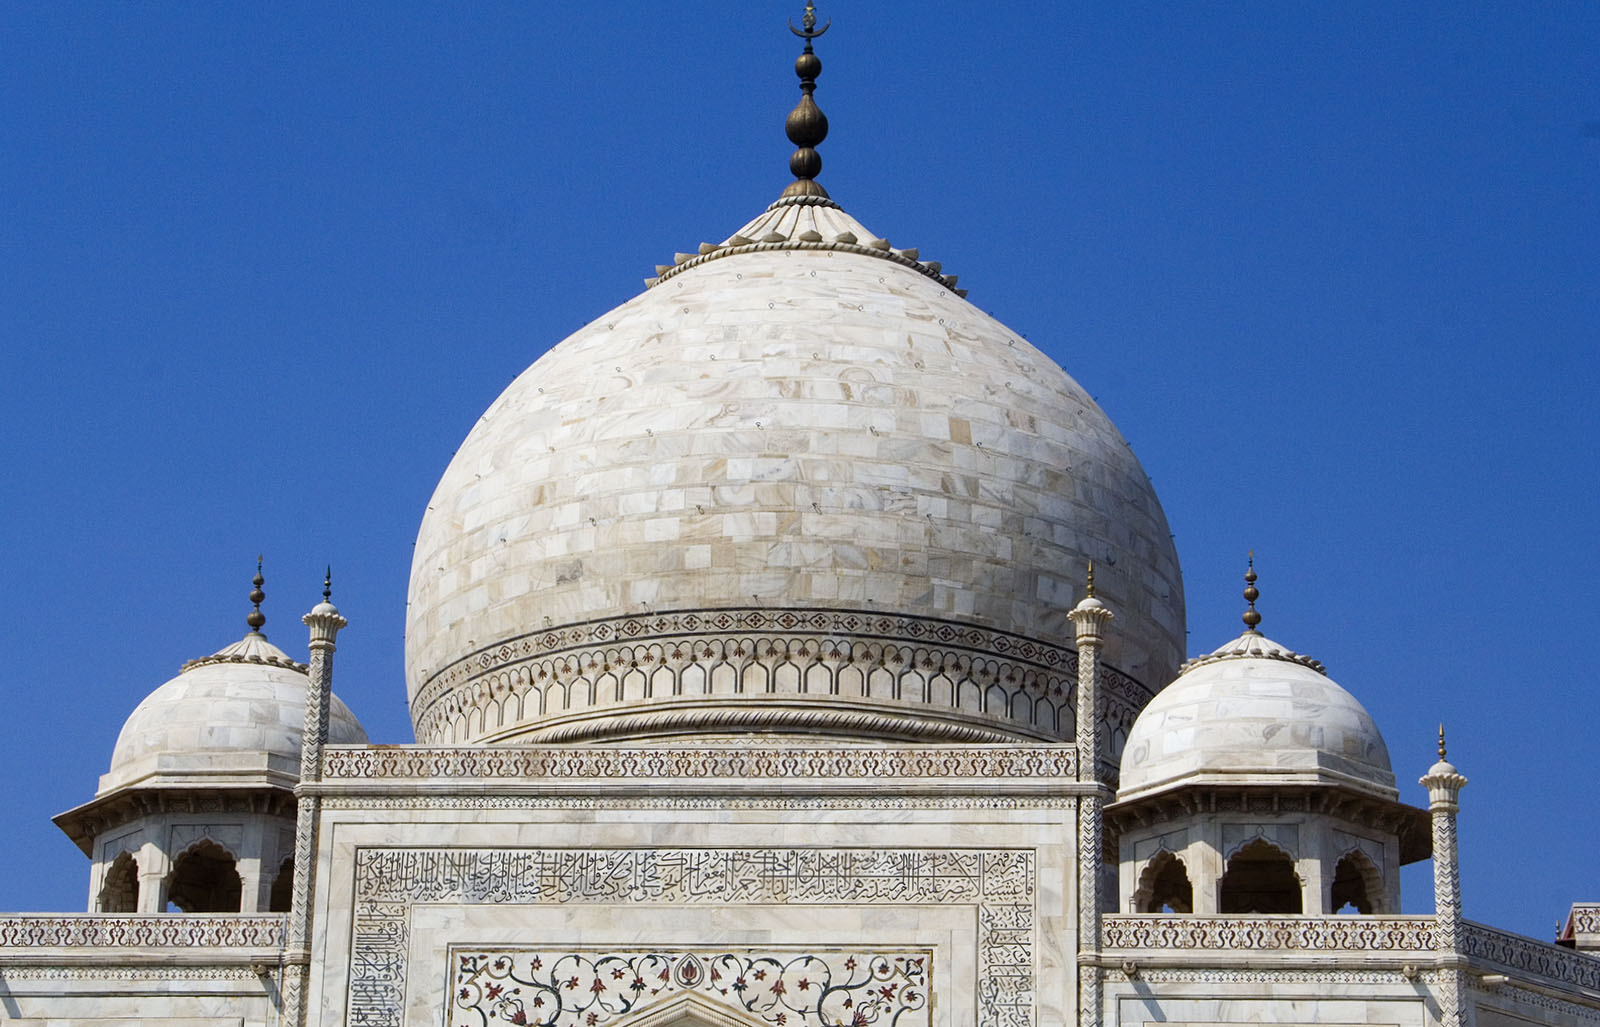 Main dome and finial on the Taj Mahal mausoleum